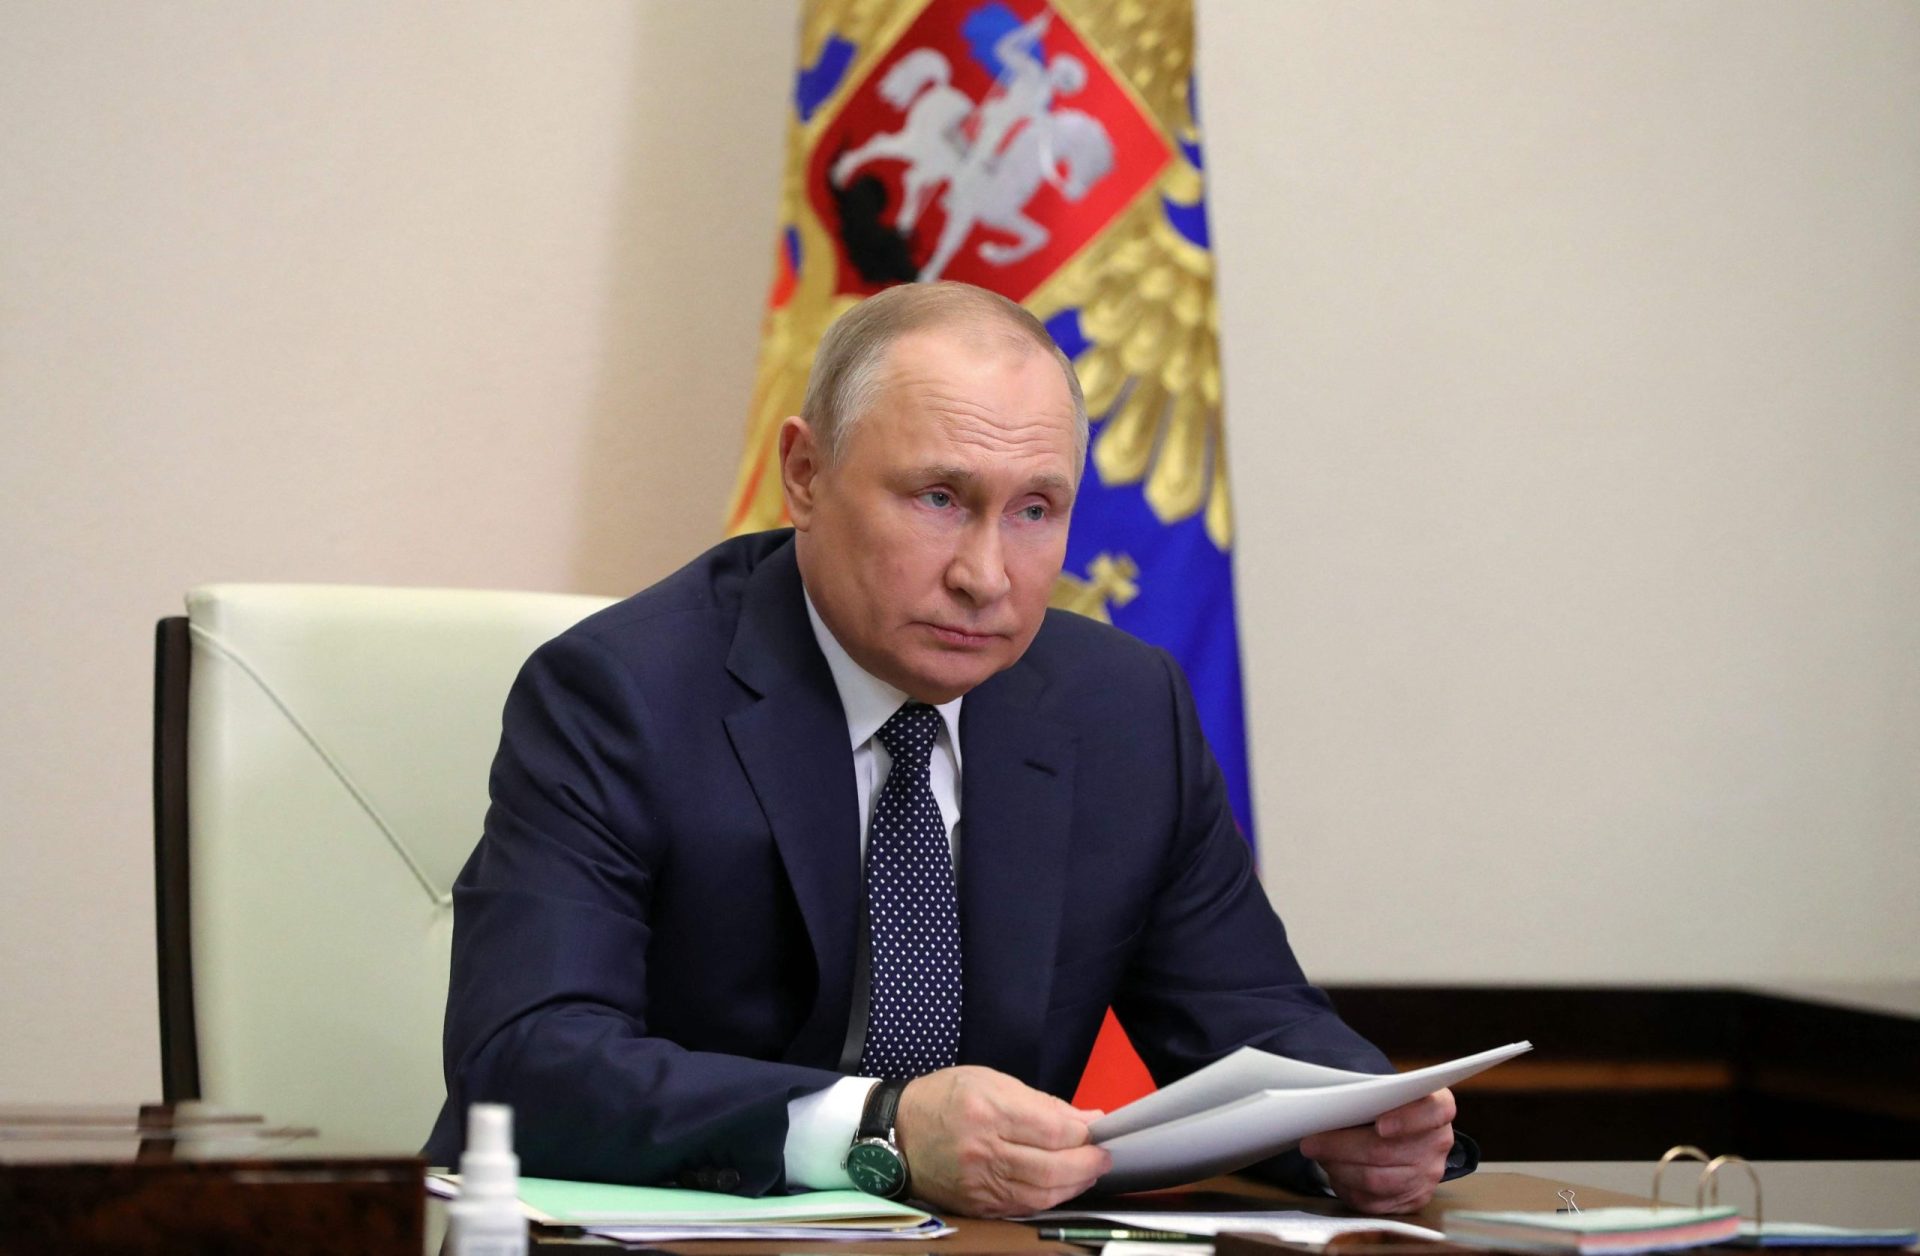 Putin insiste no pagamento em rublos. Alemanha, França e Reino Unido não cedem à chantagem